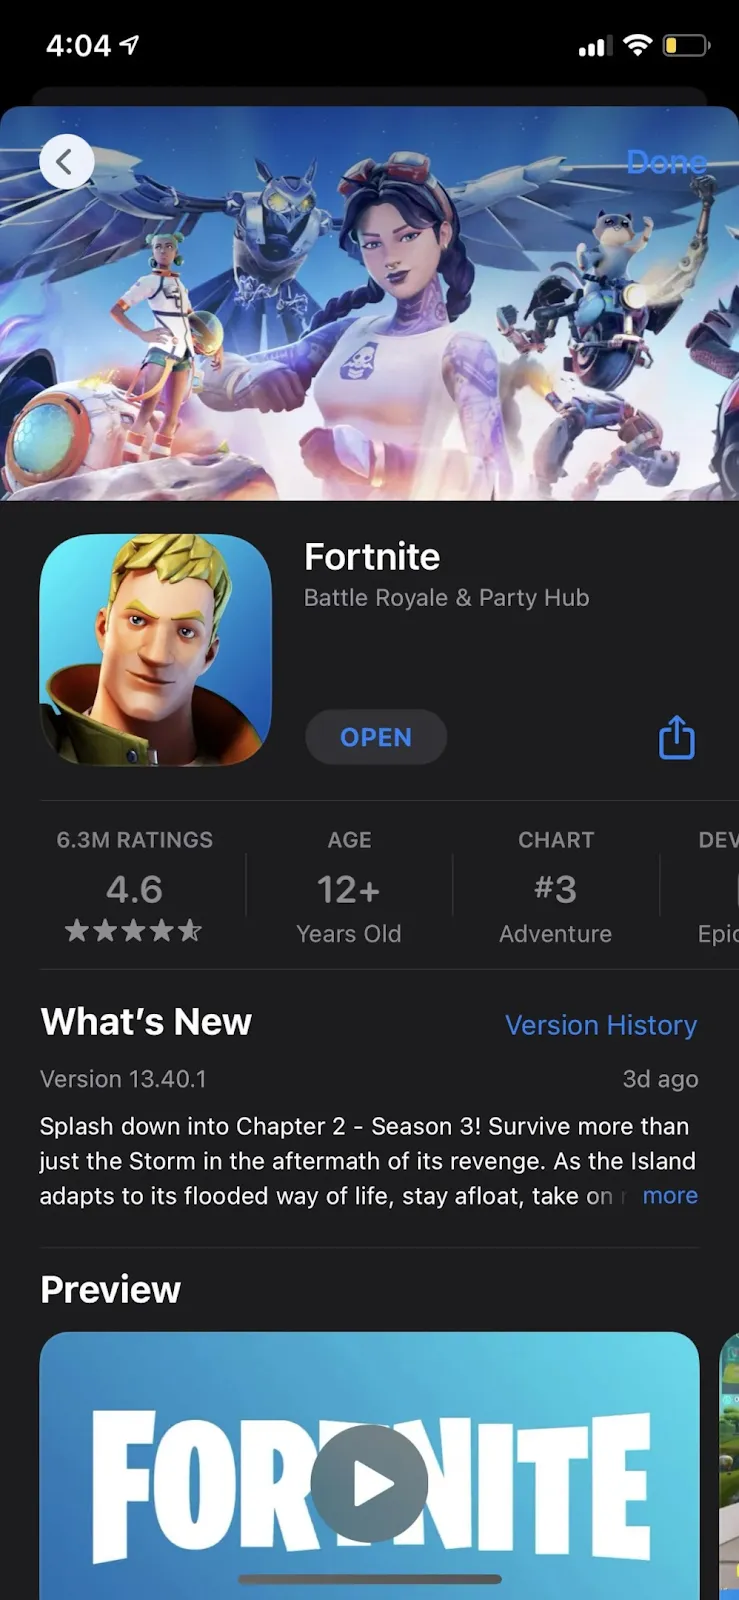 Fortnite on App Store